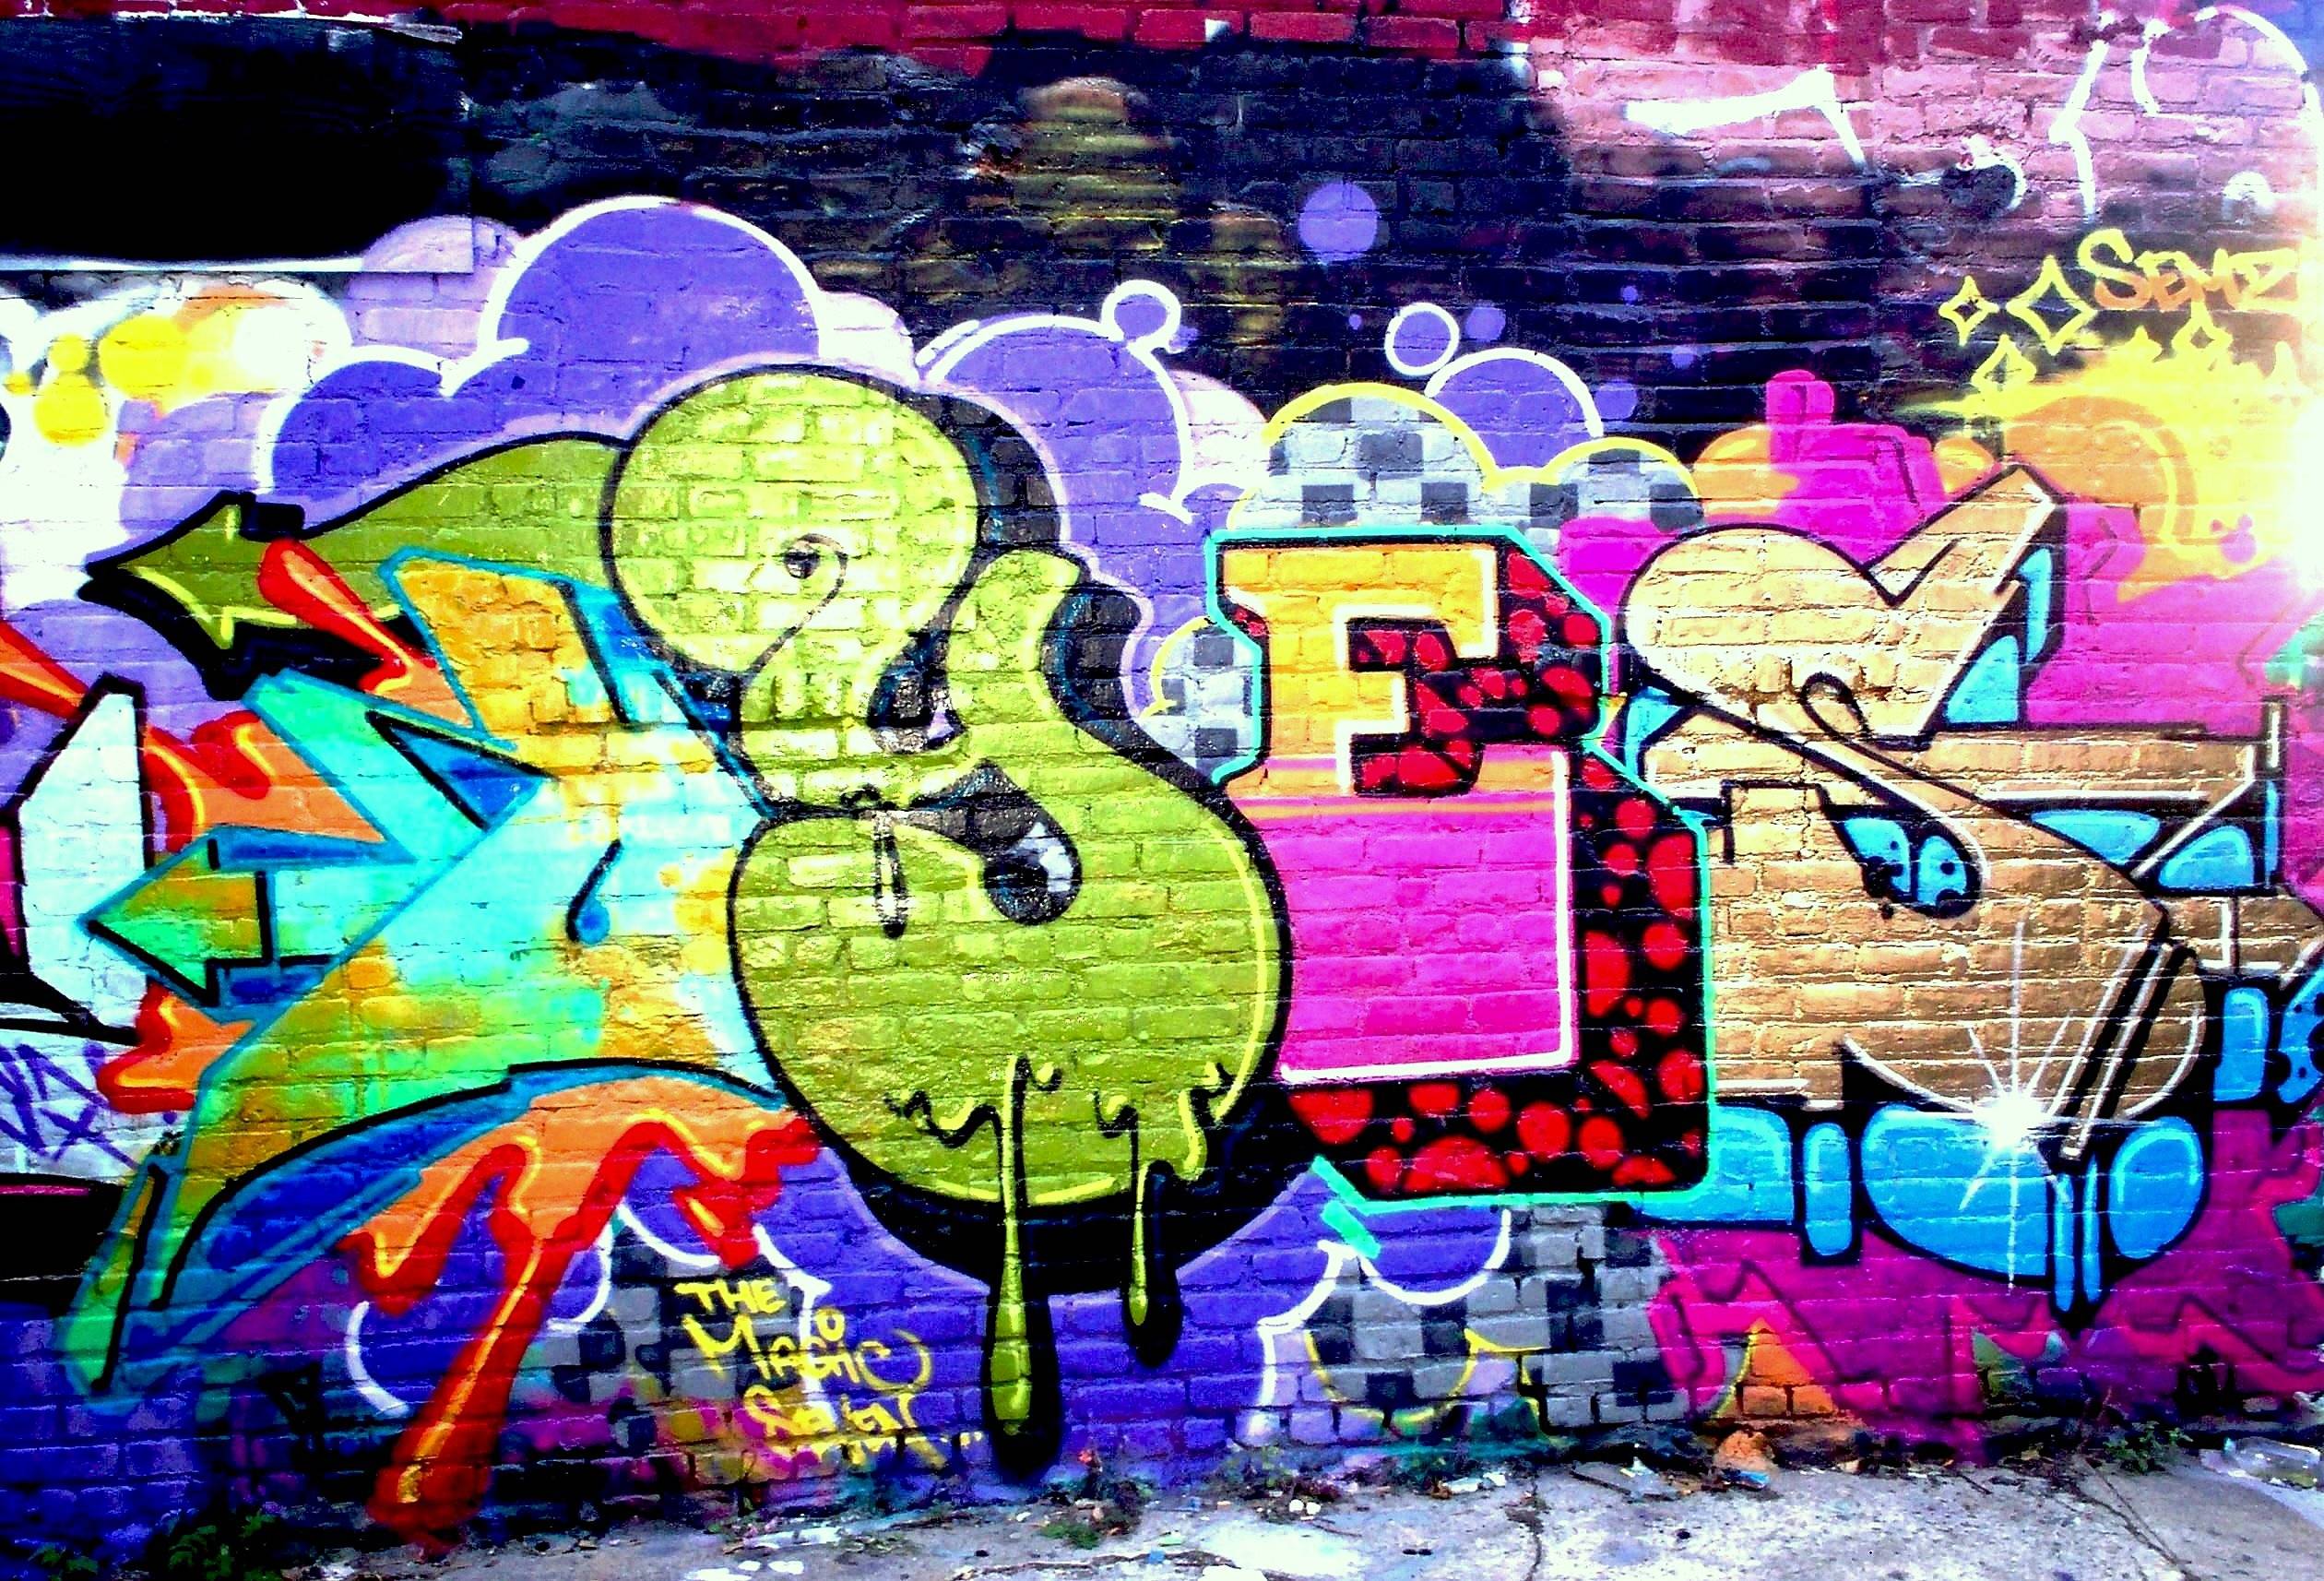 Graffiti Wallpapers Wallpaper Cave